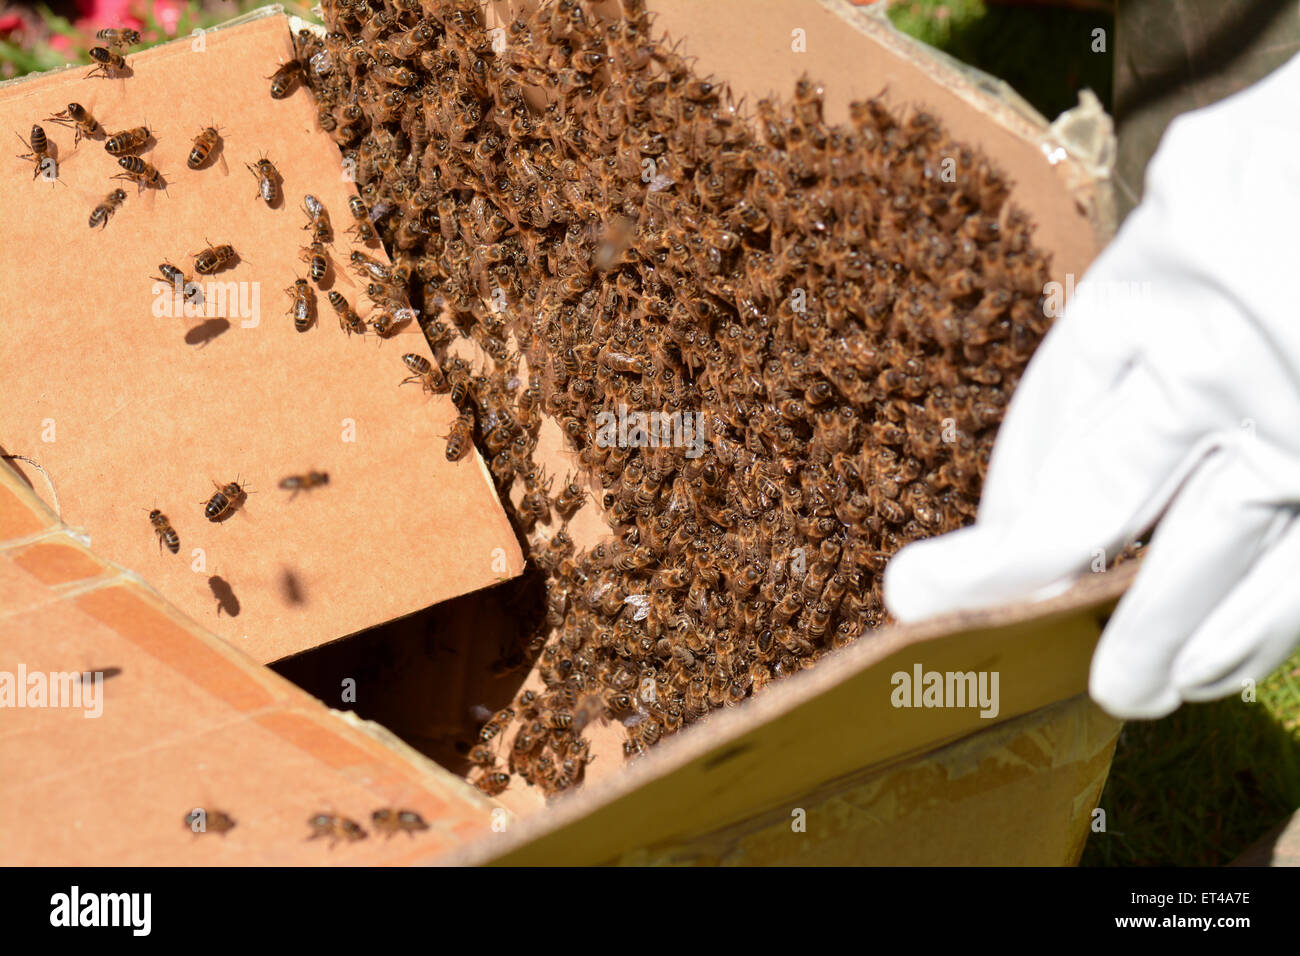 L'apiculteur de la capture d'un essaim d'abeilles dans une boîte en carton Banque D'Images